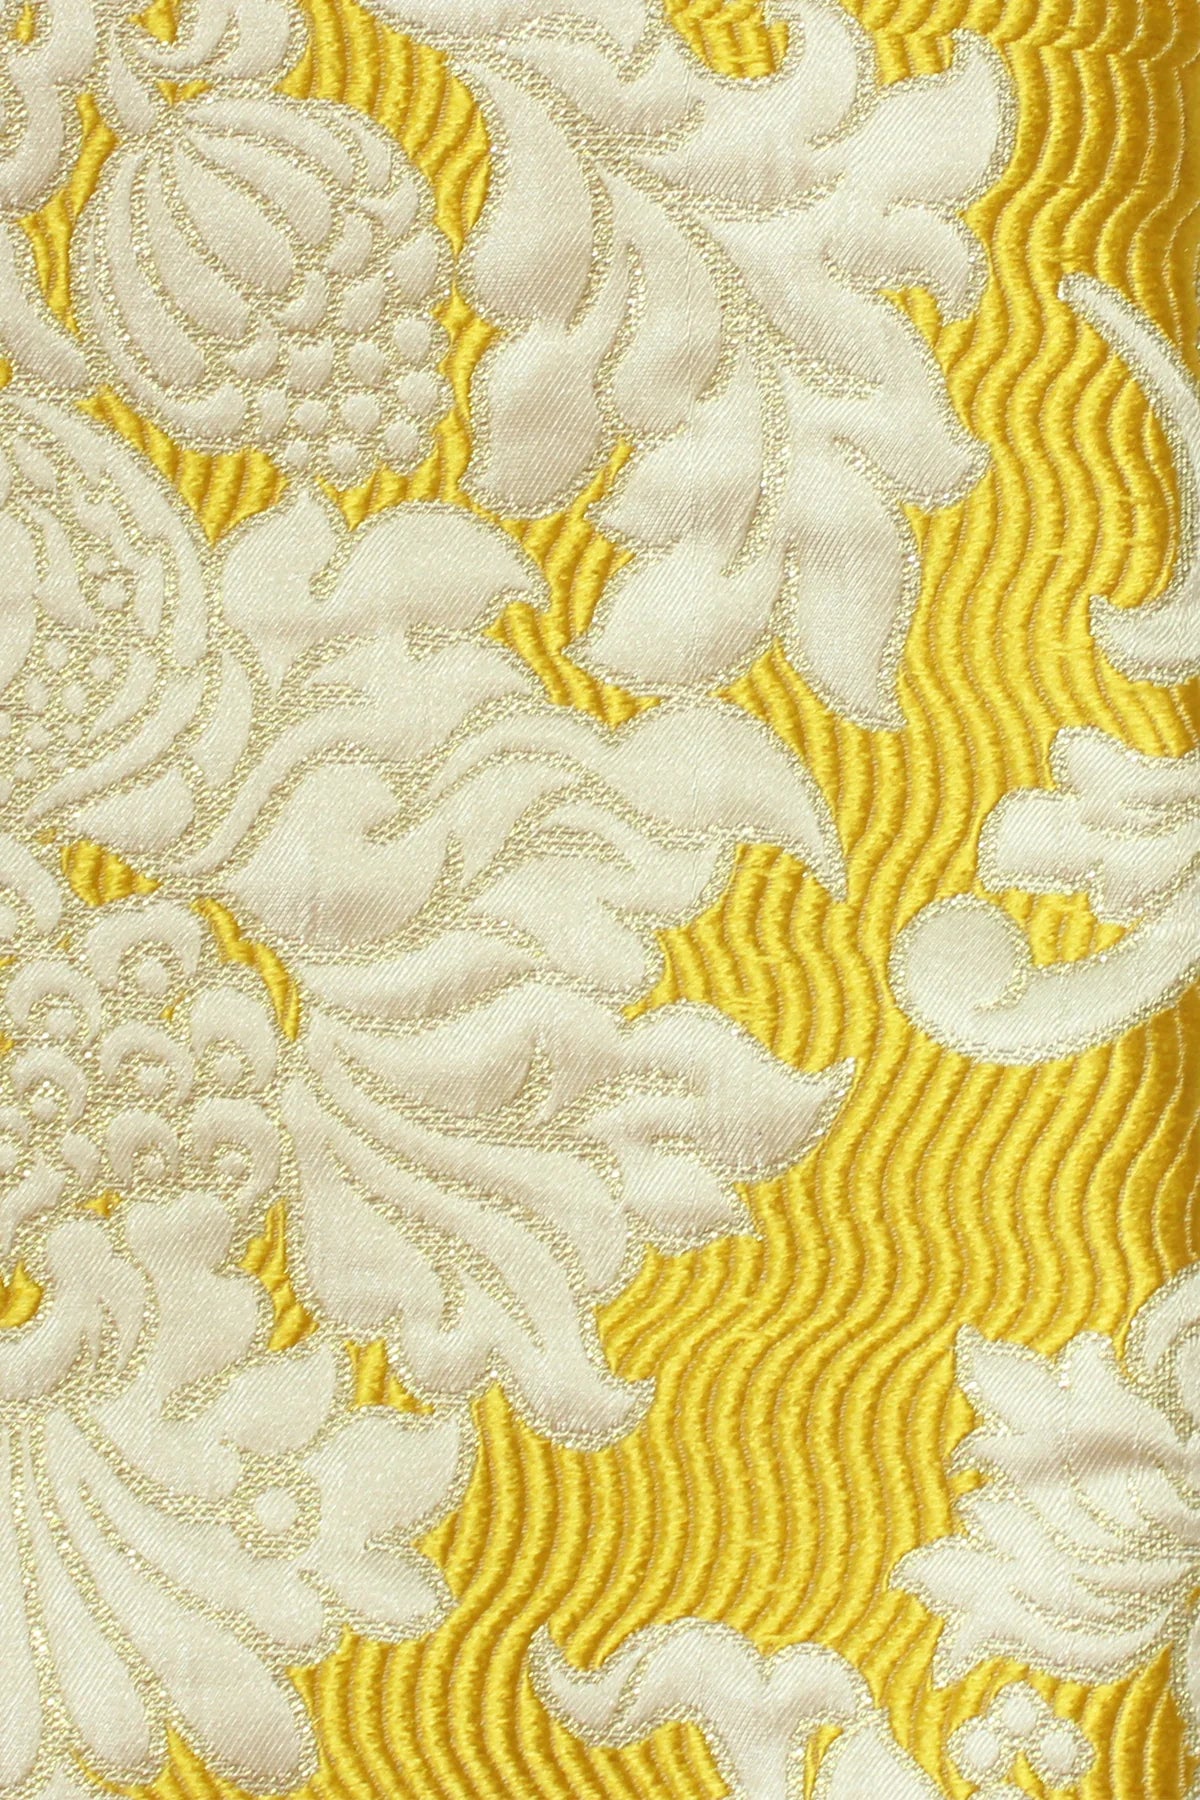 YELLOW Fabric